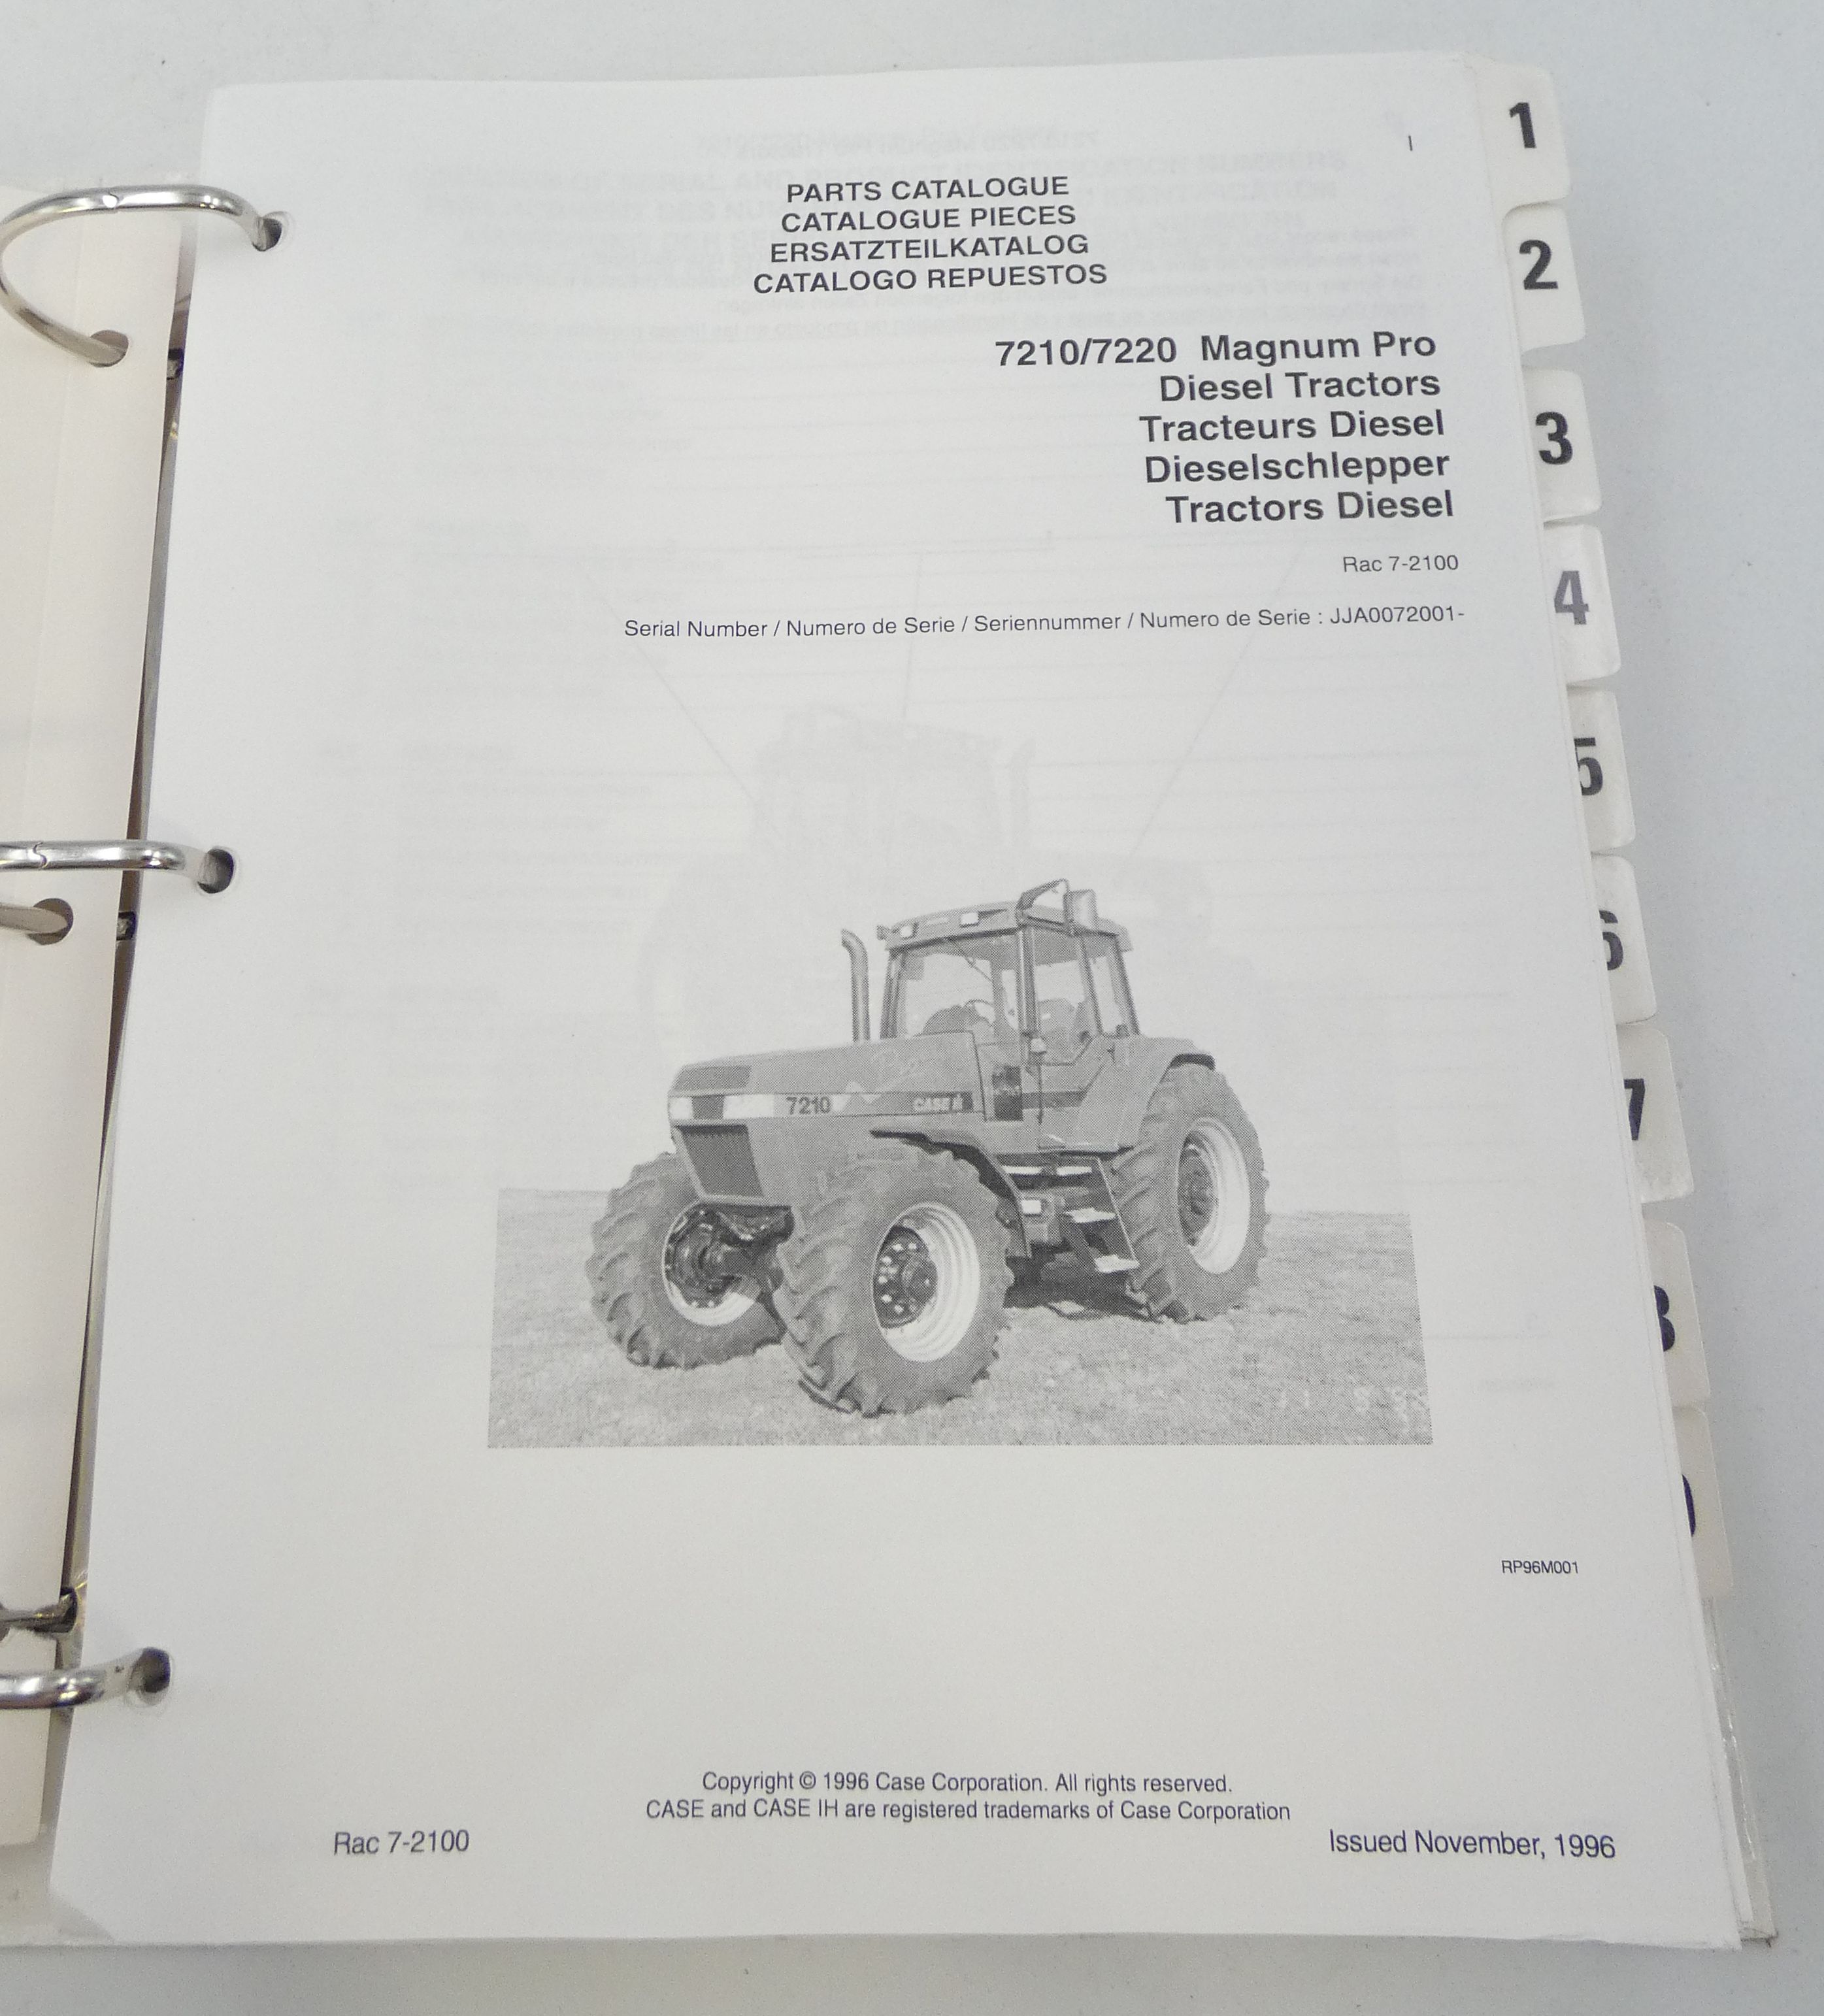 Case 7210/7220 magnum pro diesel tractors parts catalogue